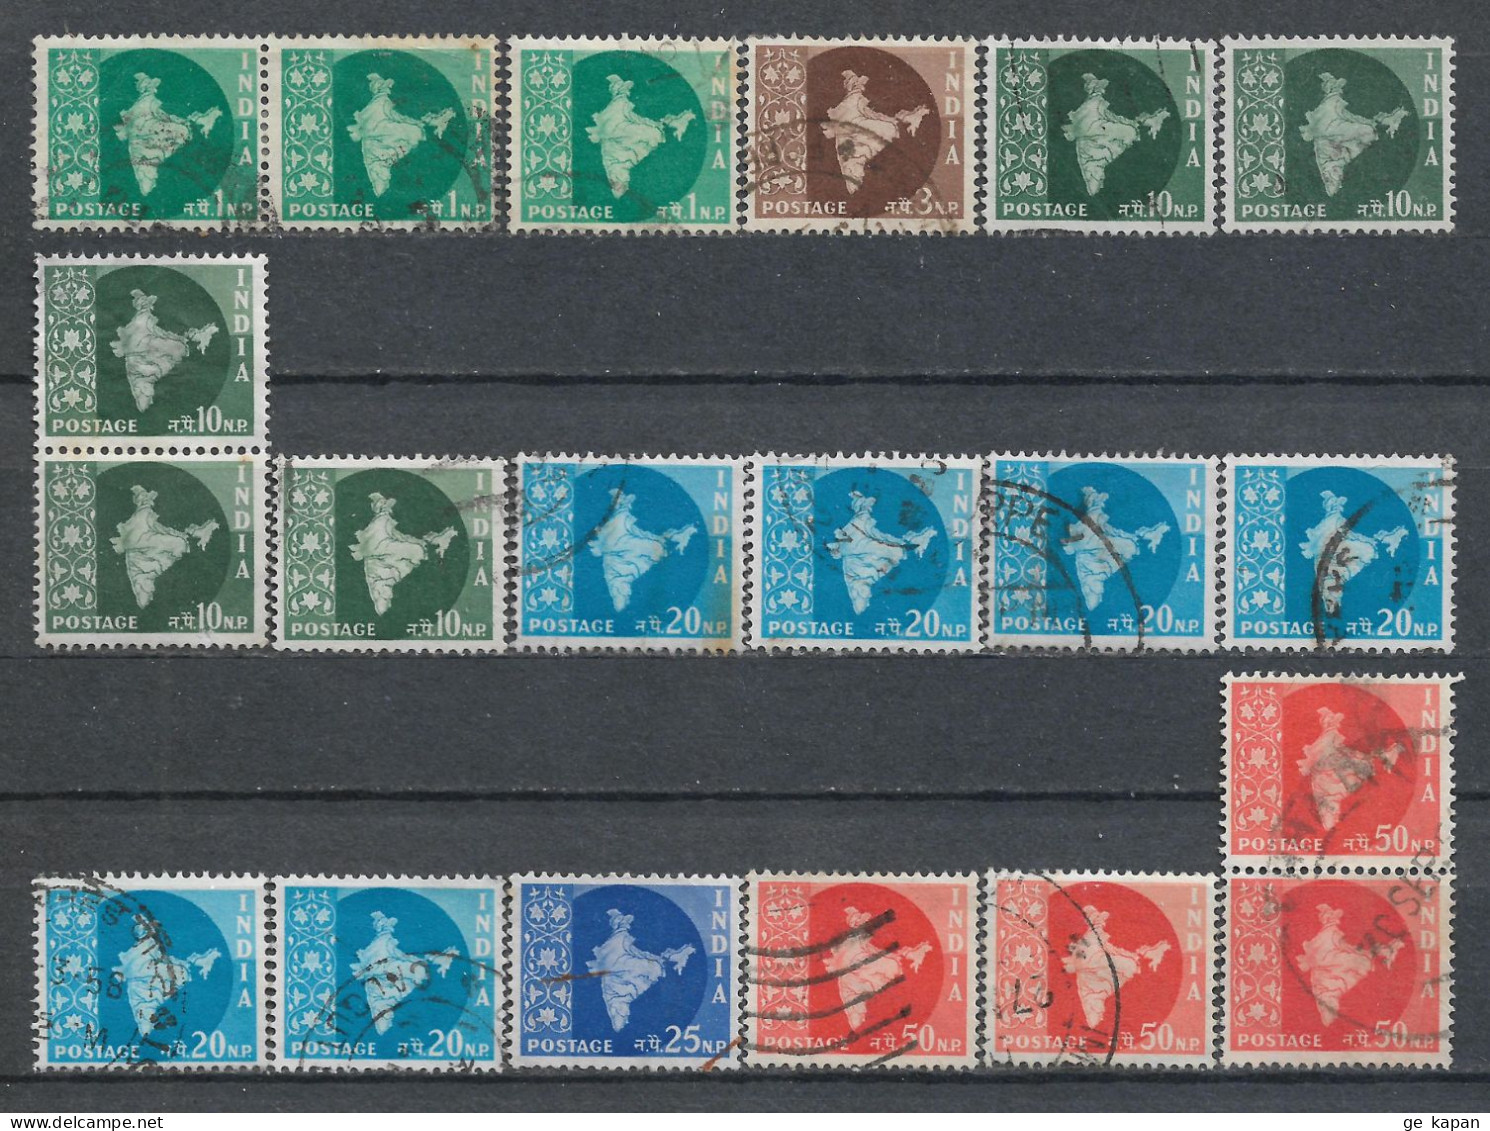 1957 INDIA SET OF 20 USED STAMPS (Michel # 259,261,265,268-270) CV €4.00 - Gebruikt